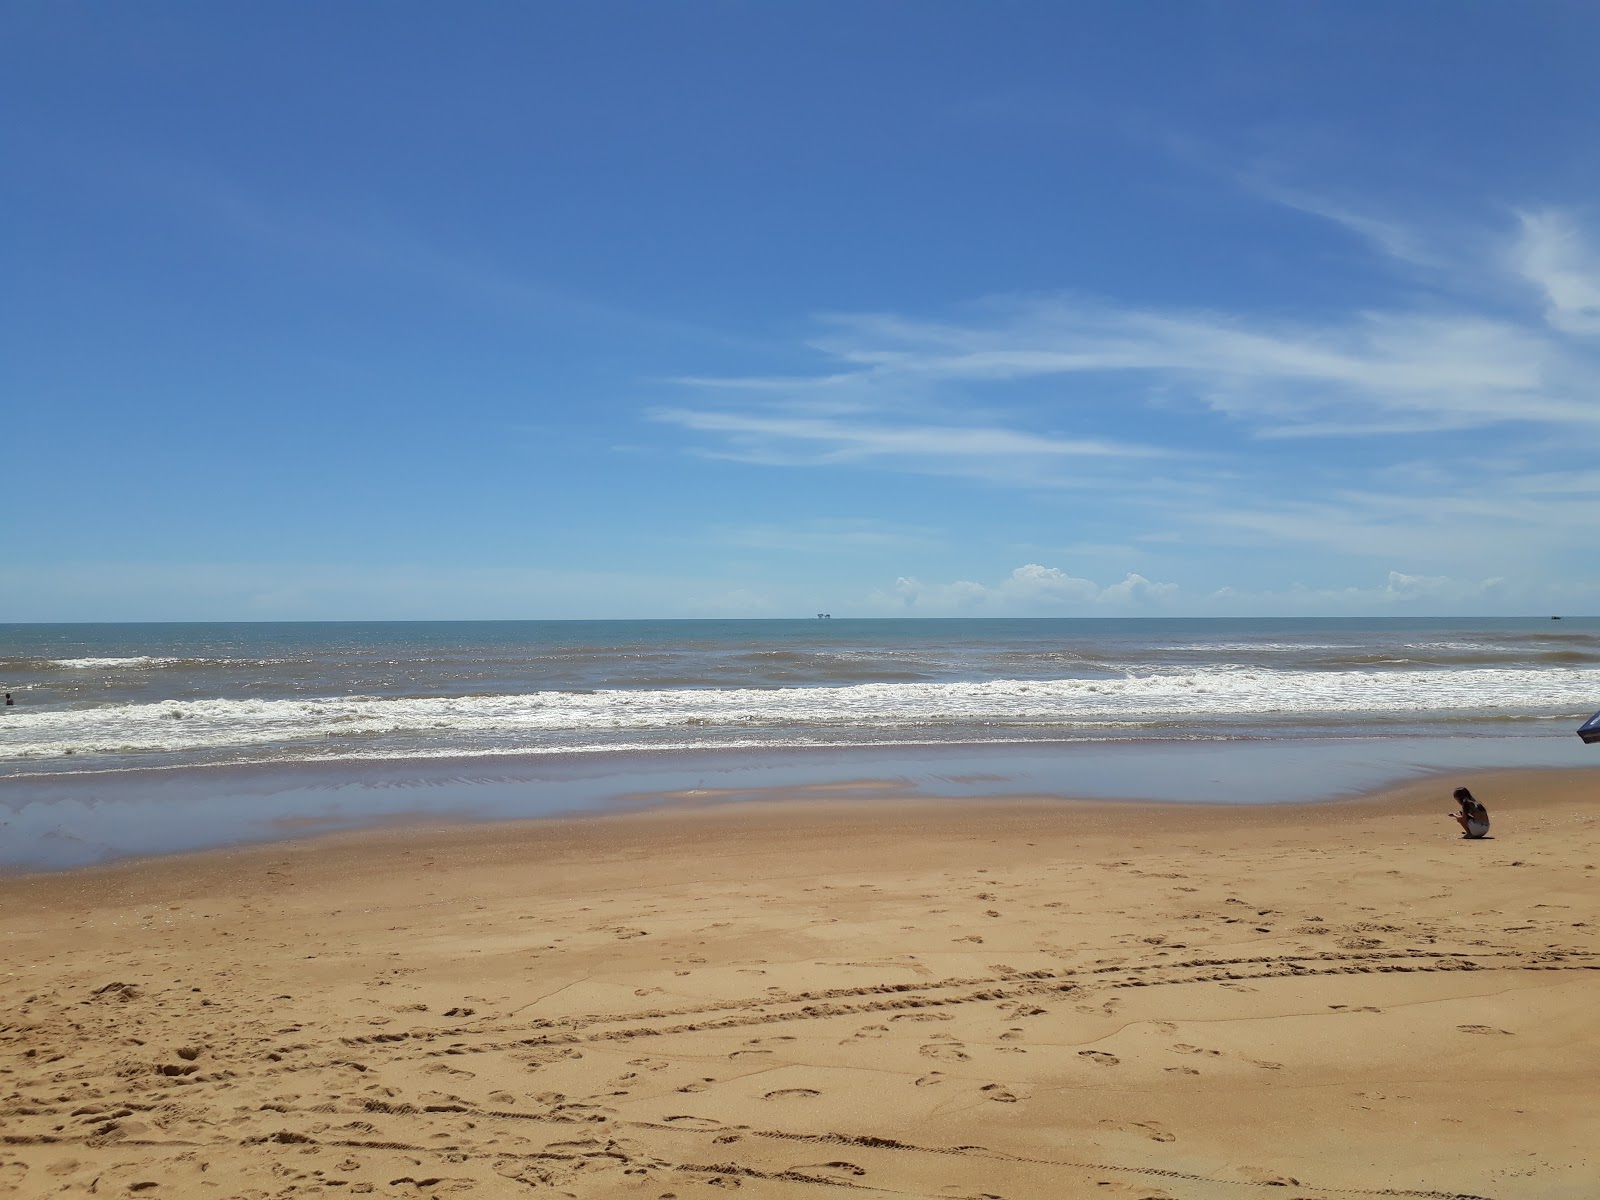 乌鲁苏夸拉海滩的照片 具有非常干净级别的清洁度